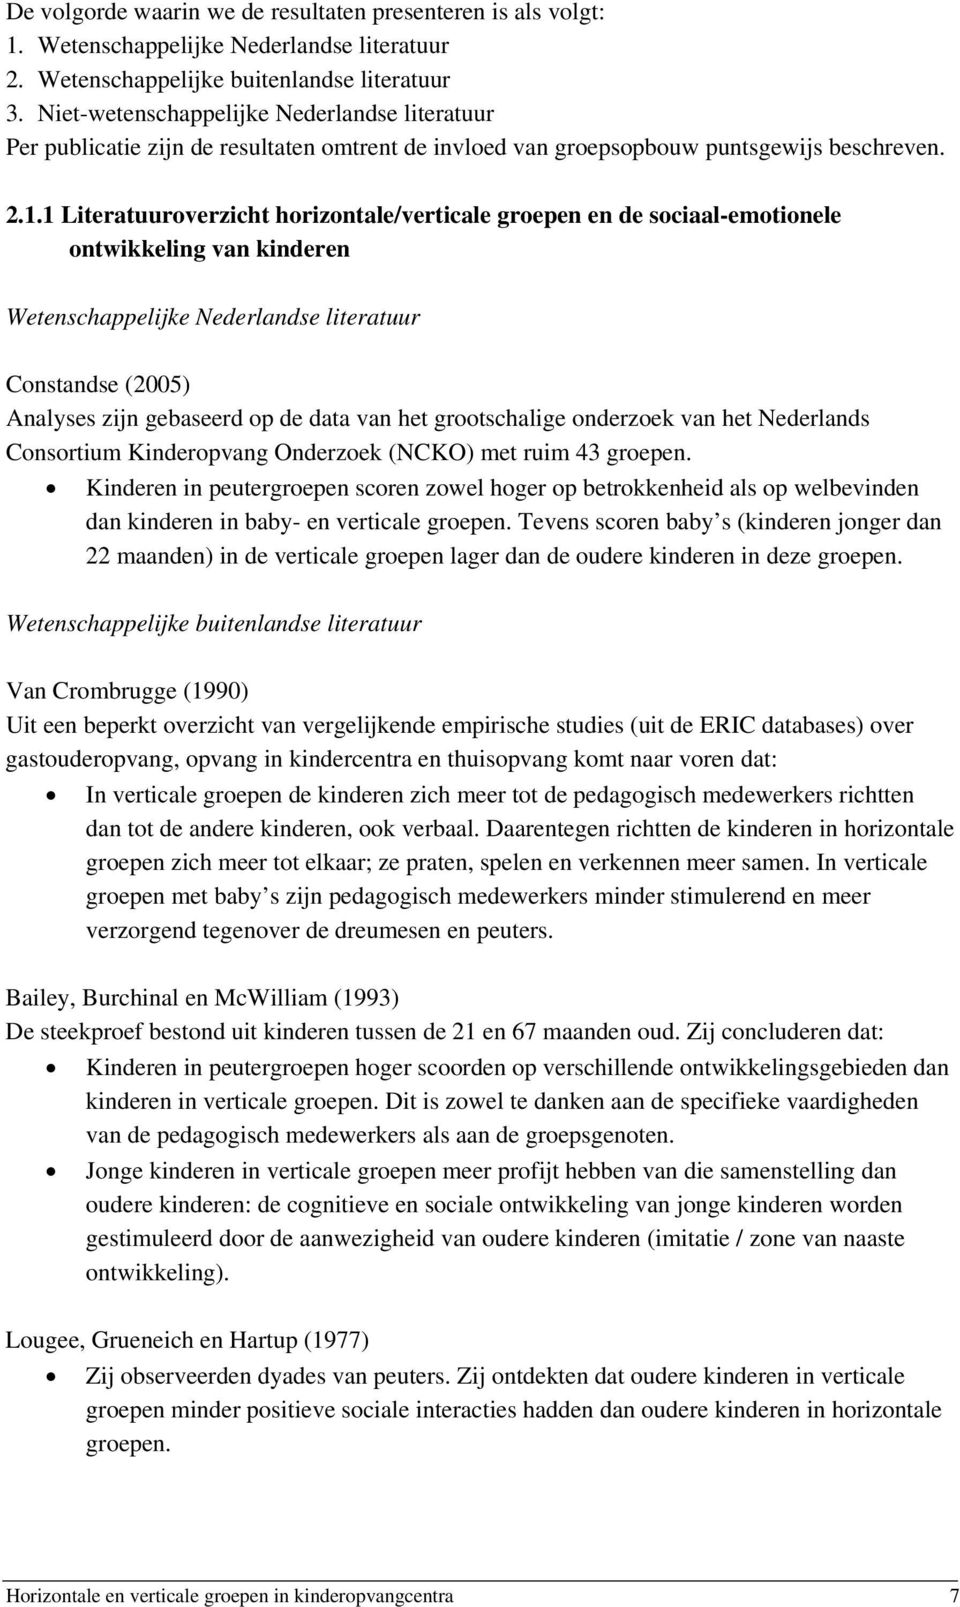 1 Literatuuroverzicht horizontale/verticale groepen en de sociaal-emotionele ontwikkeling van kinderen Wetenschappelijke Nederlandse literatuur Constandse (2005) Analyses zijn gebaseerd op de data